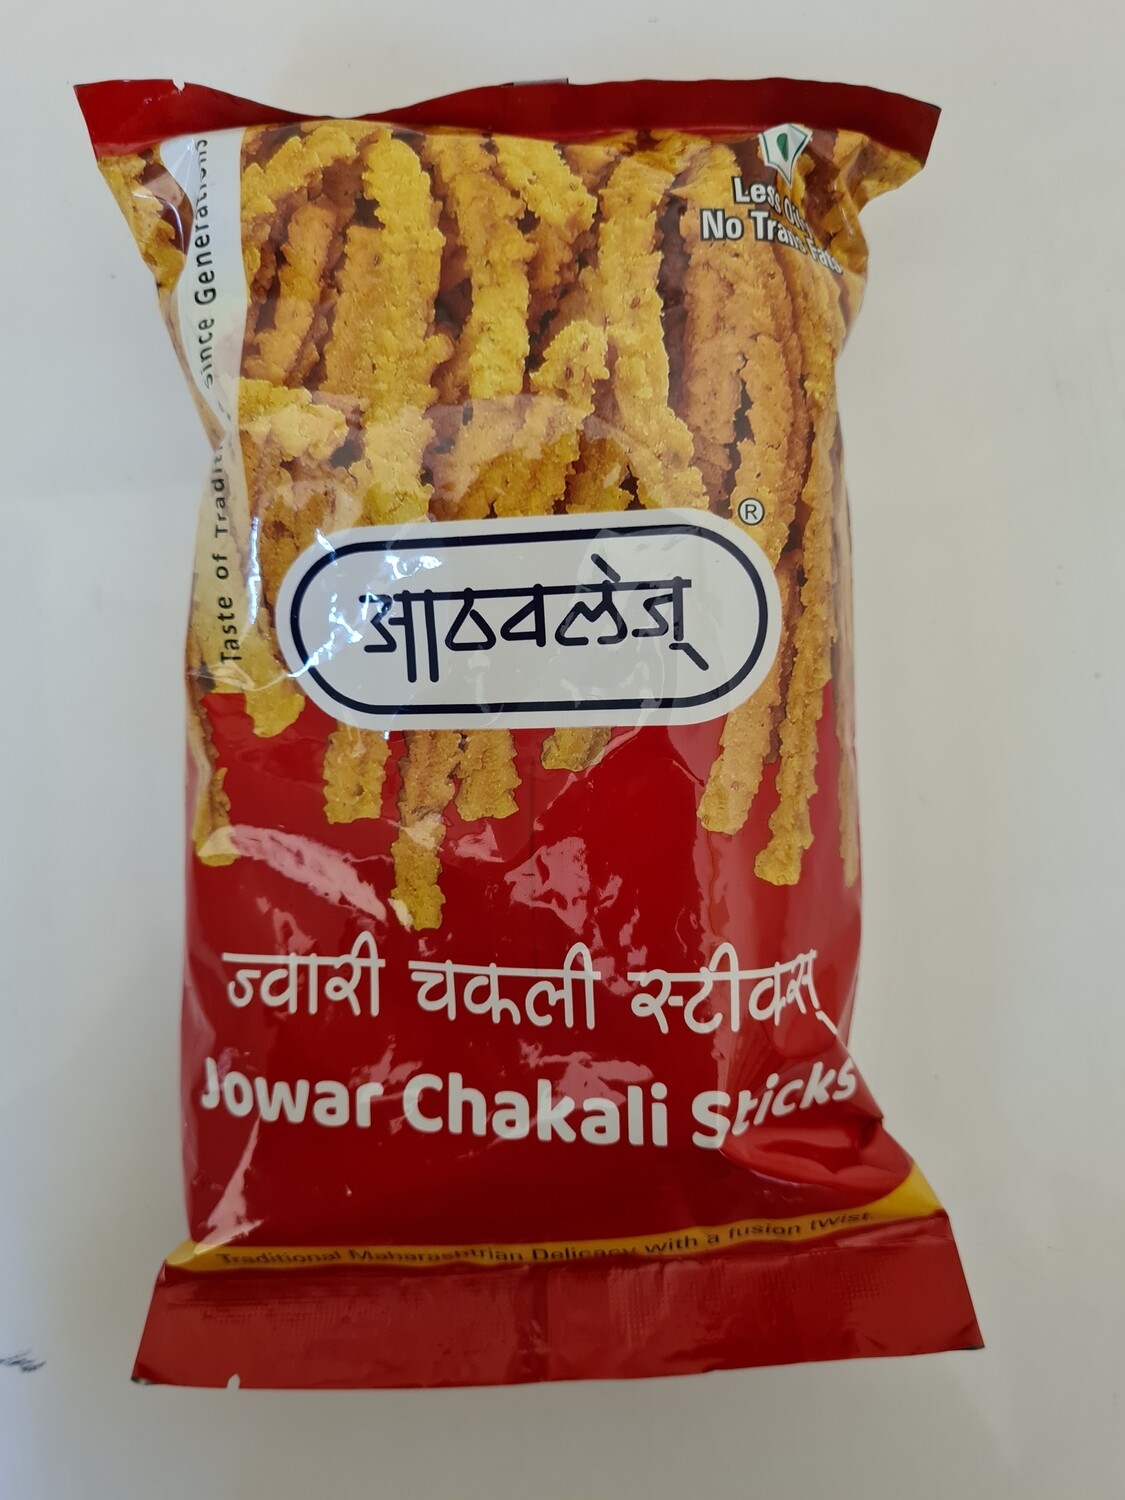 Jowar Chakali Sticks